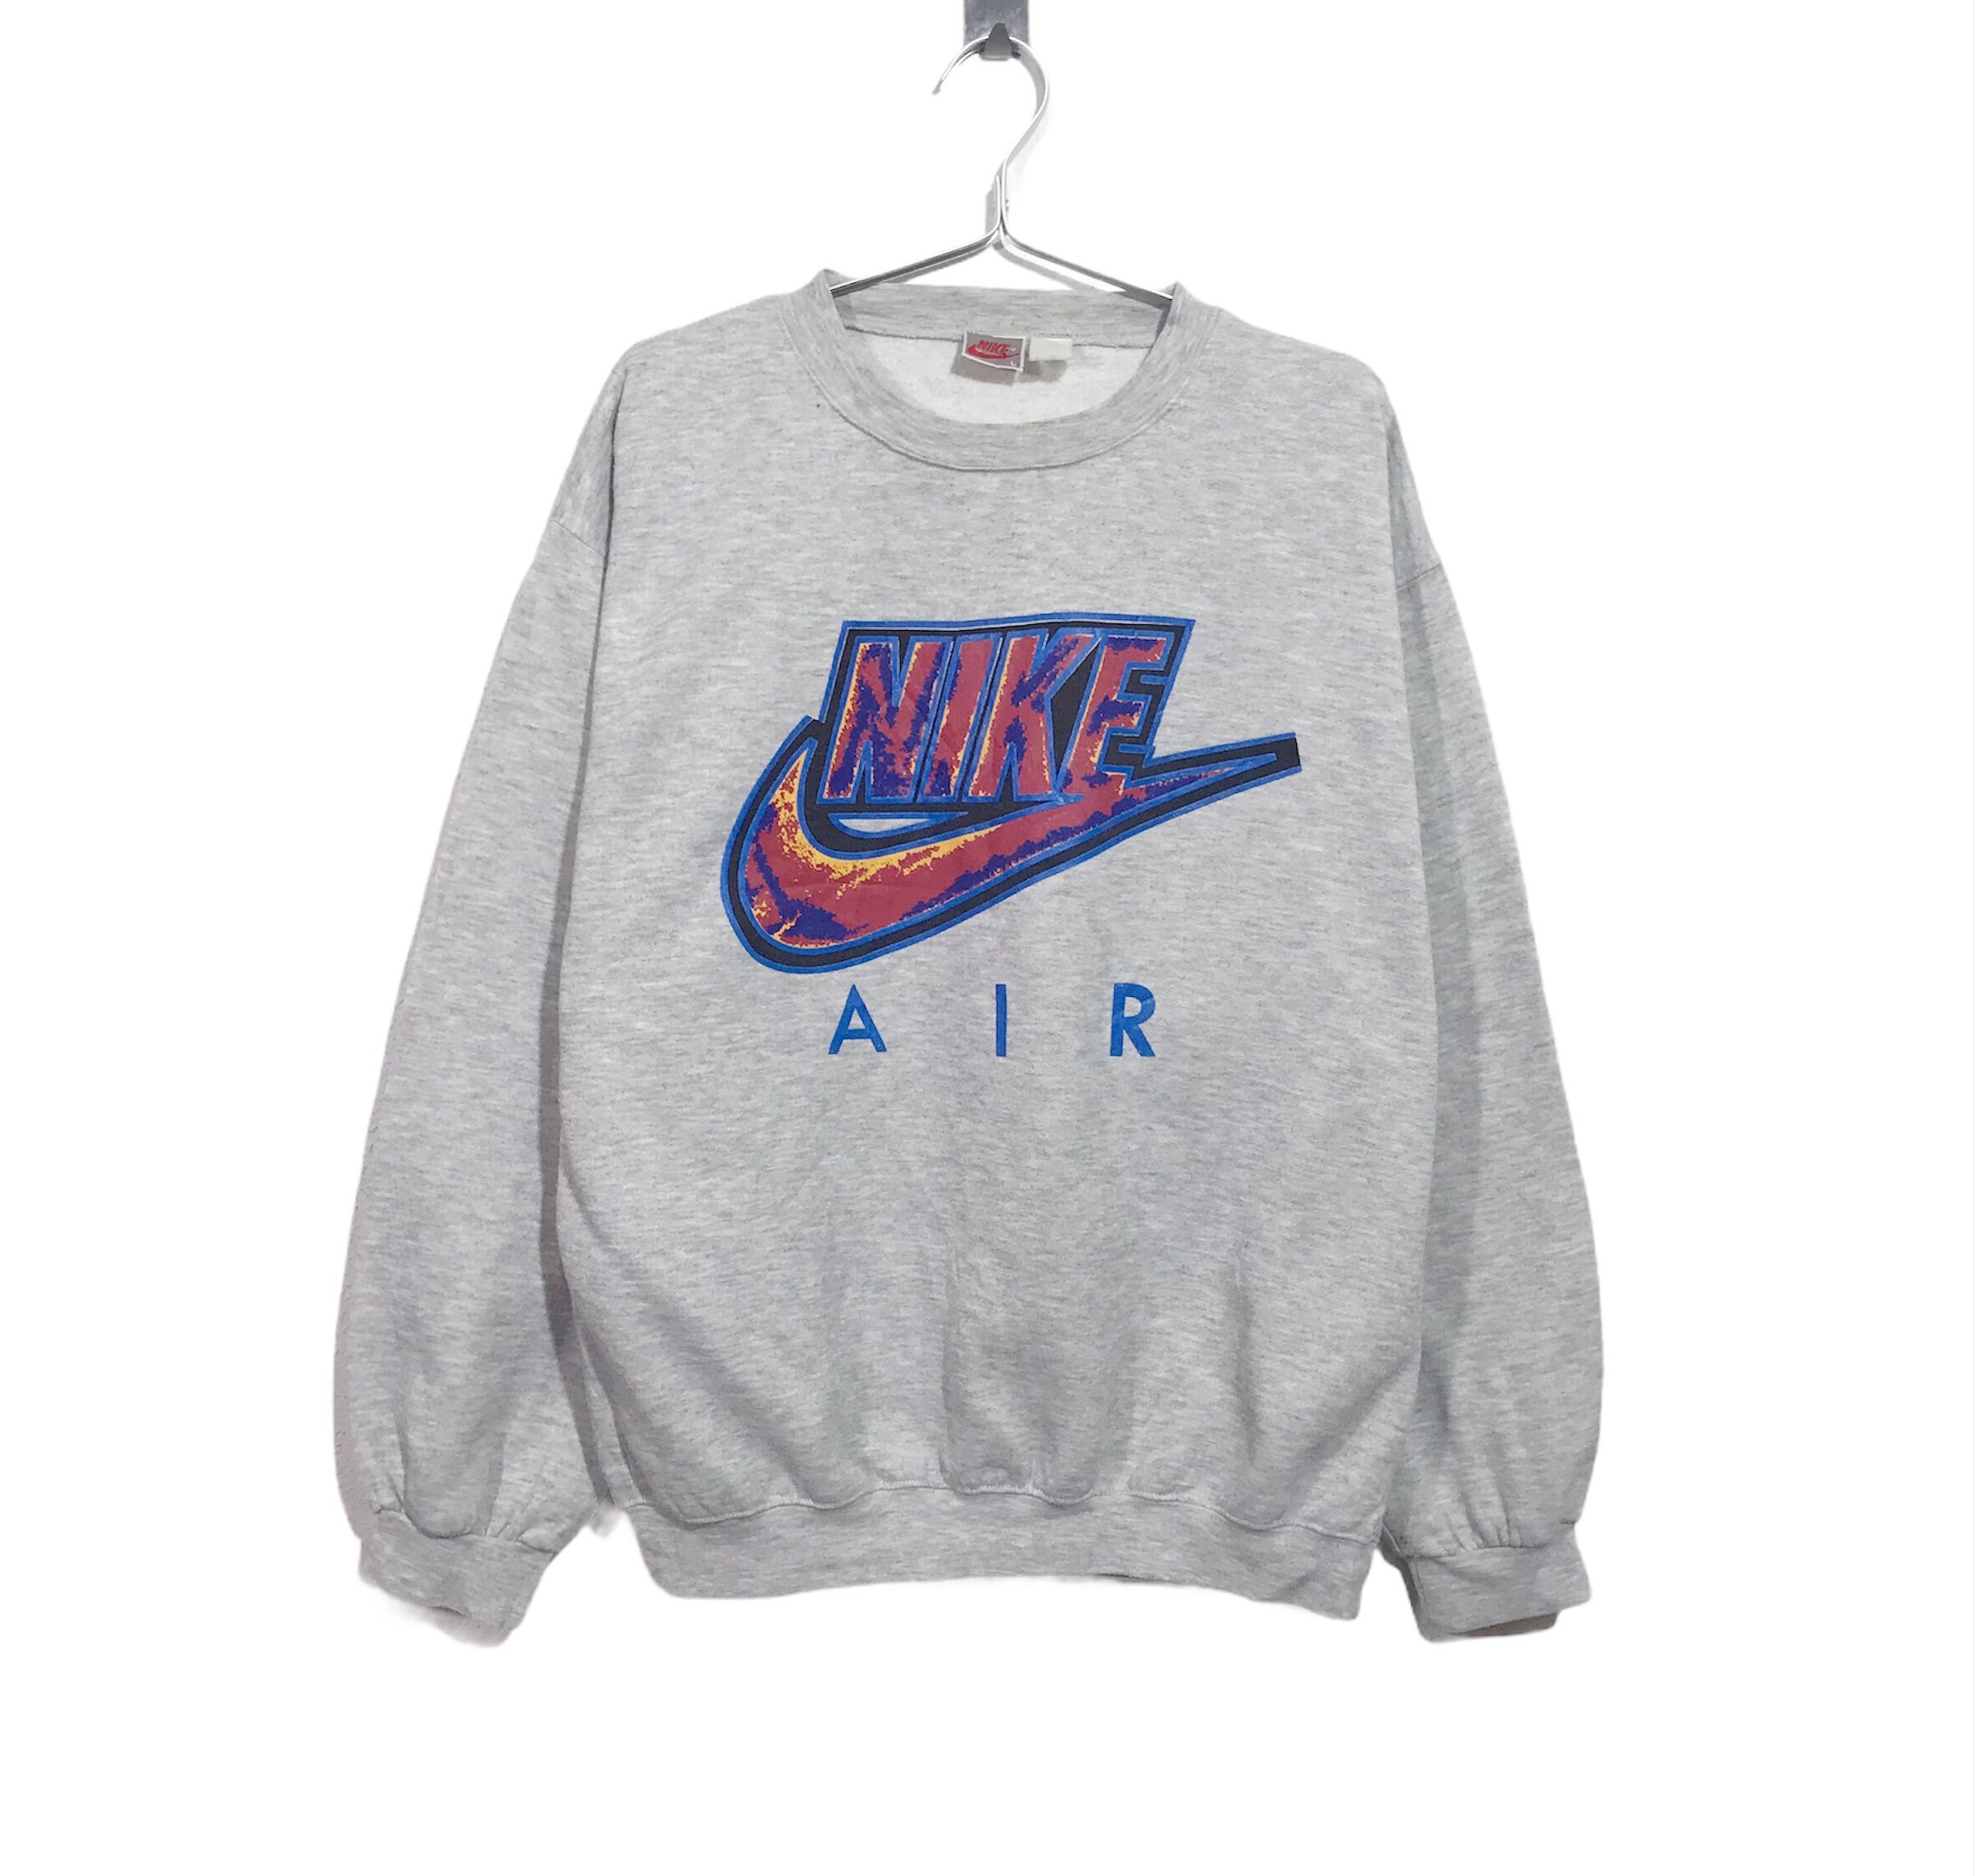 Vintage Nike Air Printed Logo Streetwear Crewneck Sweatshirt - Etsy UK